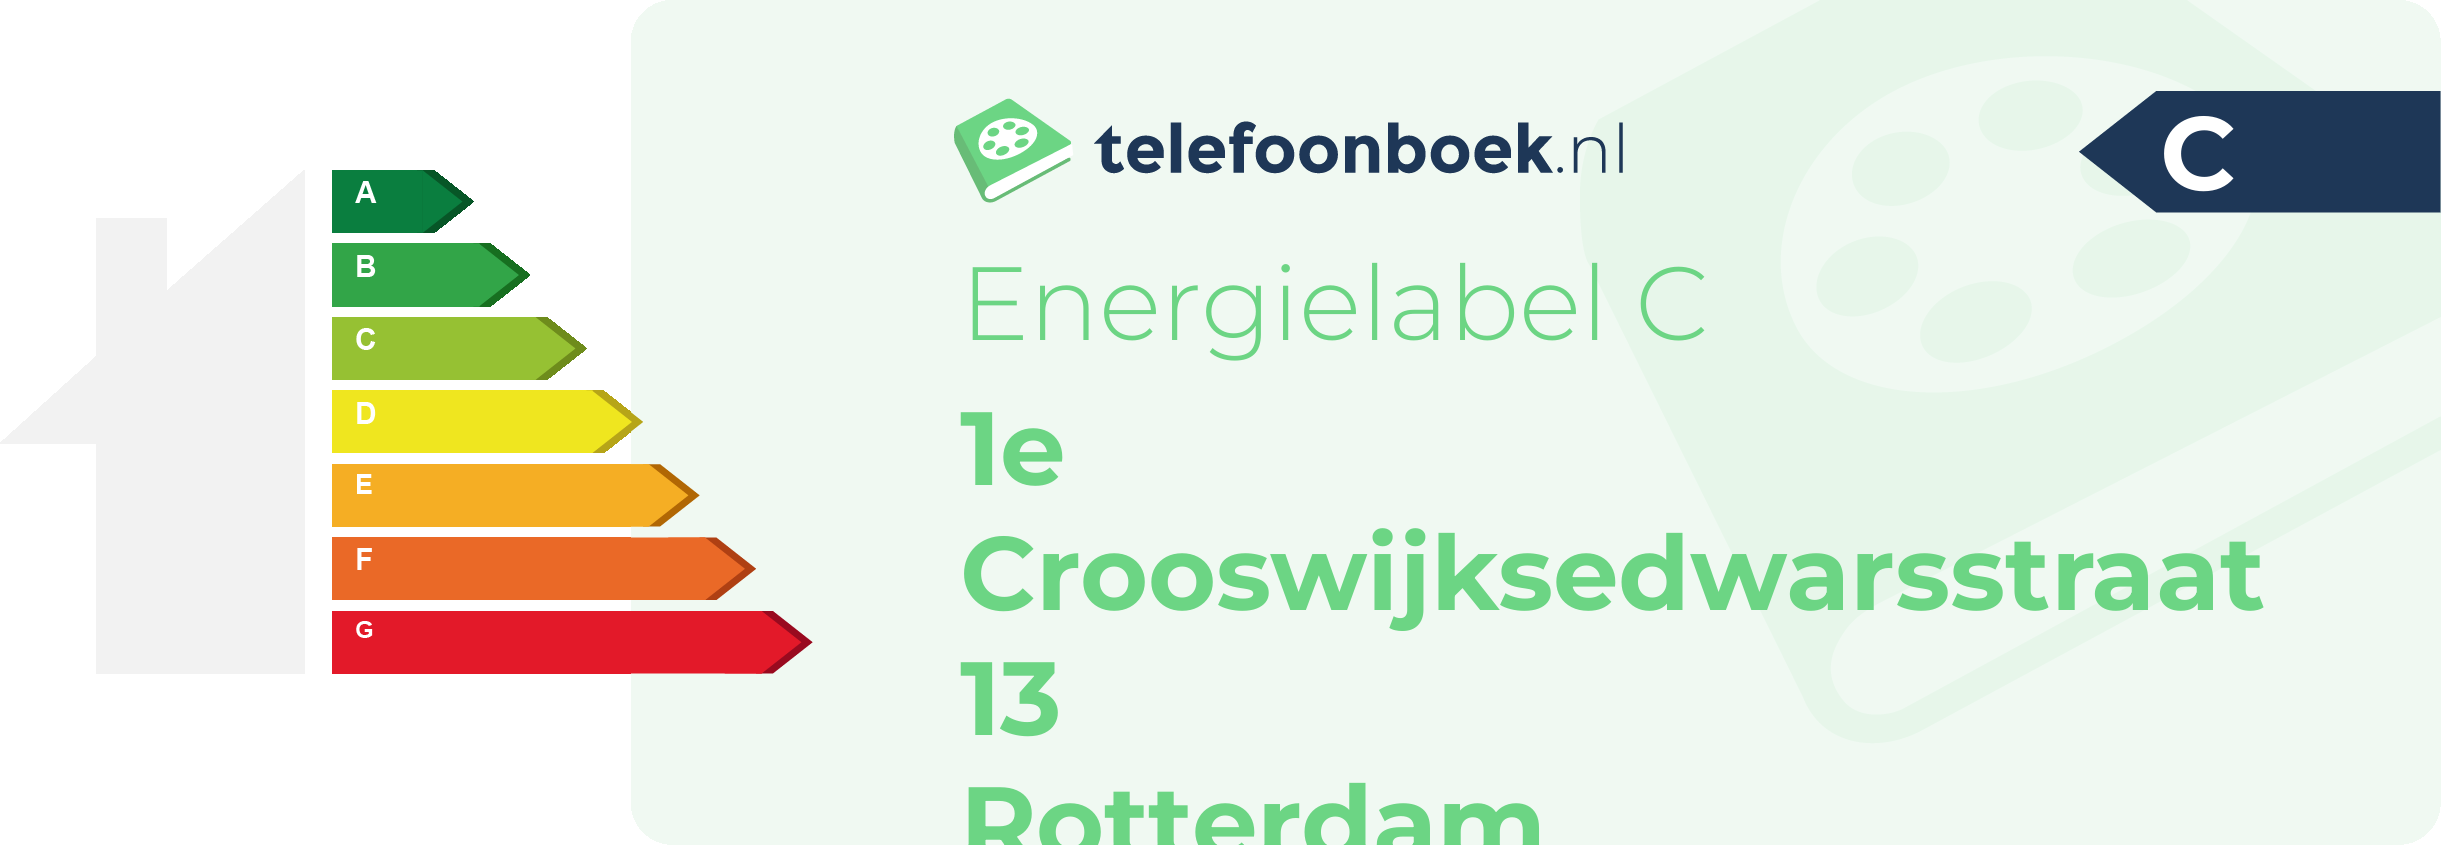 Energielabel 1e Crooswijksedwarsstraat 13 Rotterdam